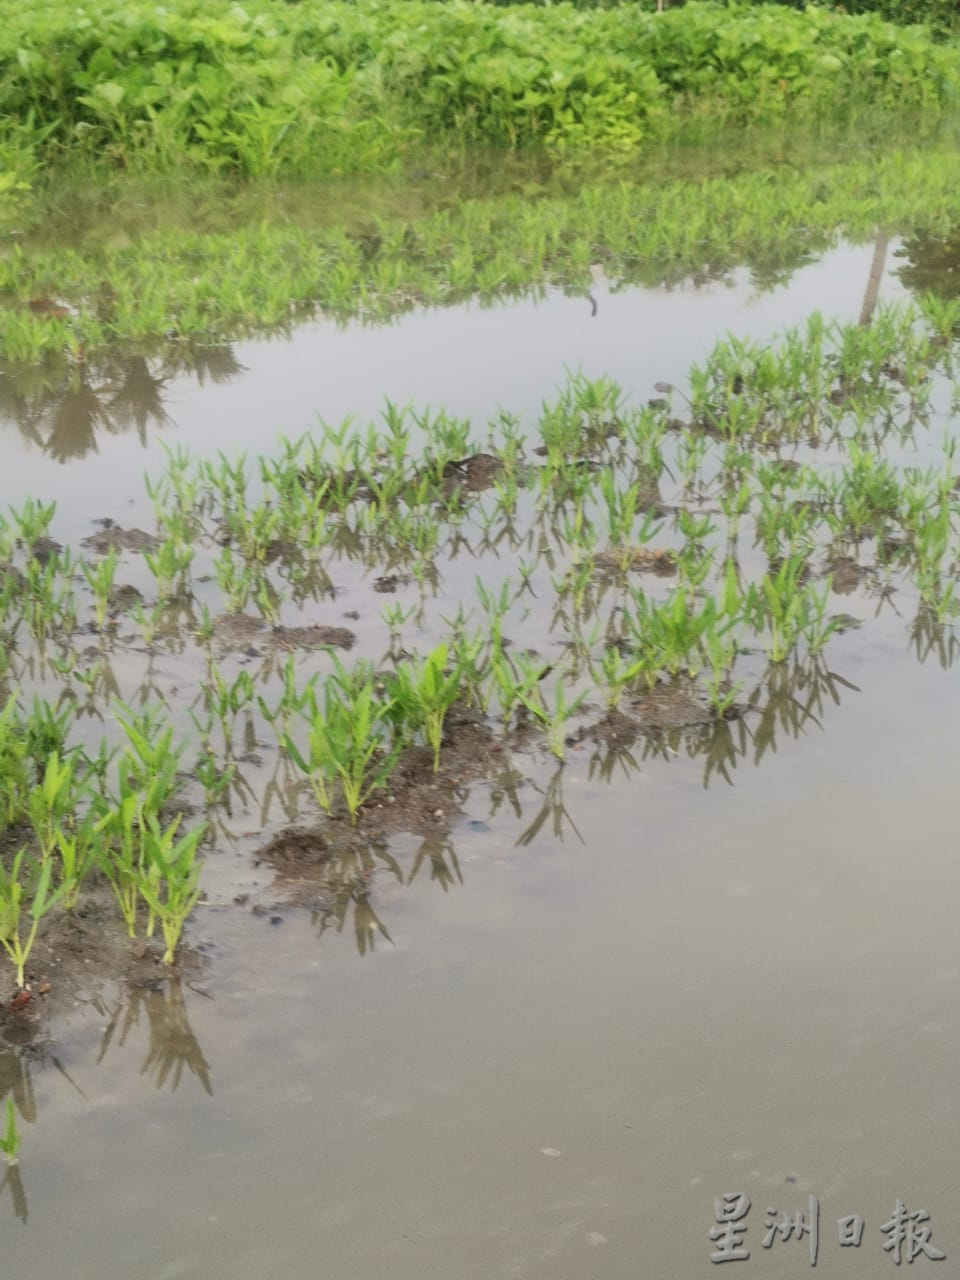 （大北马）双溪六甲菜园区再面对淹水窘境。